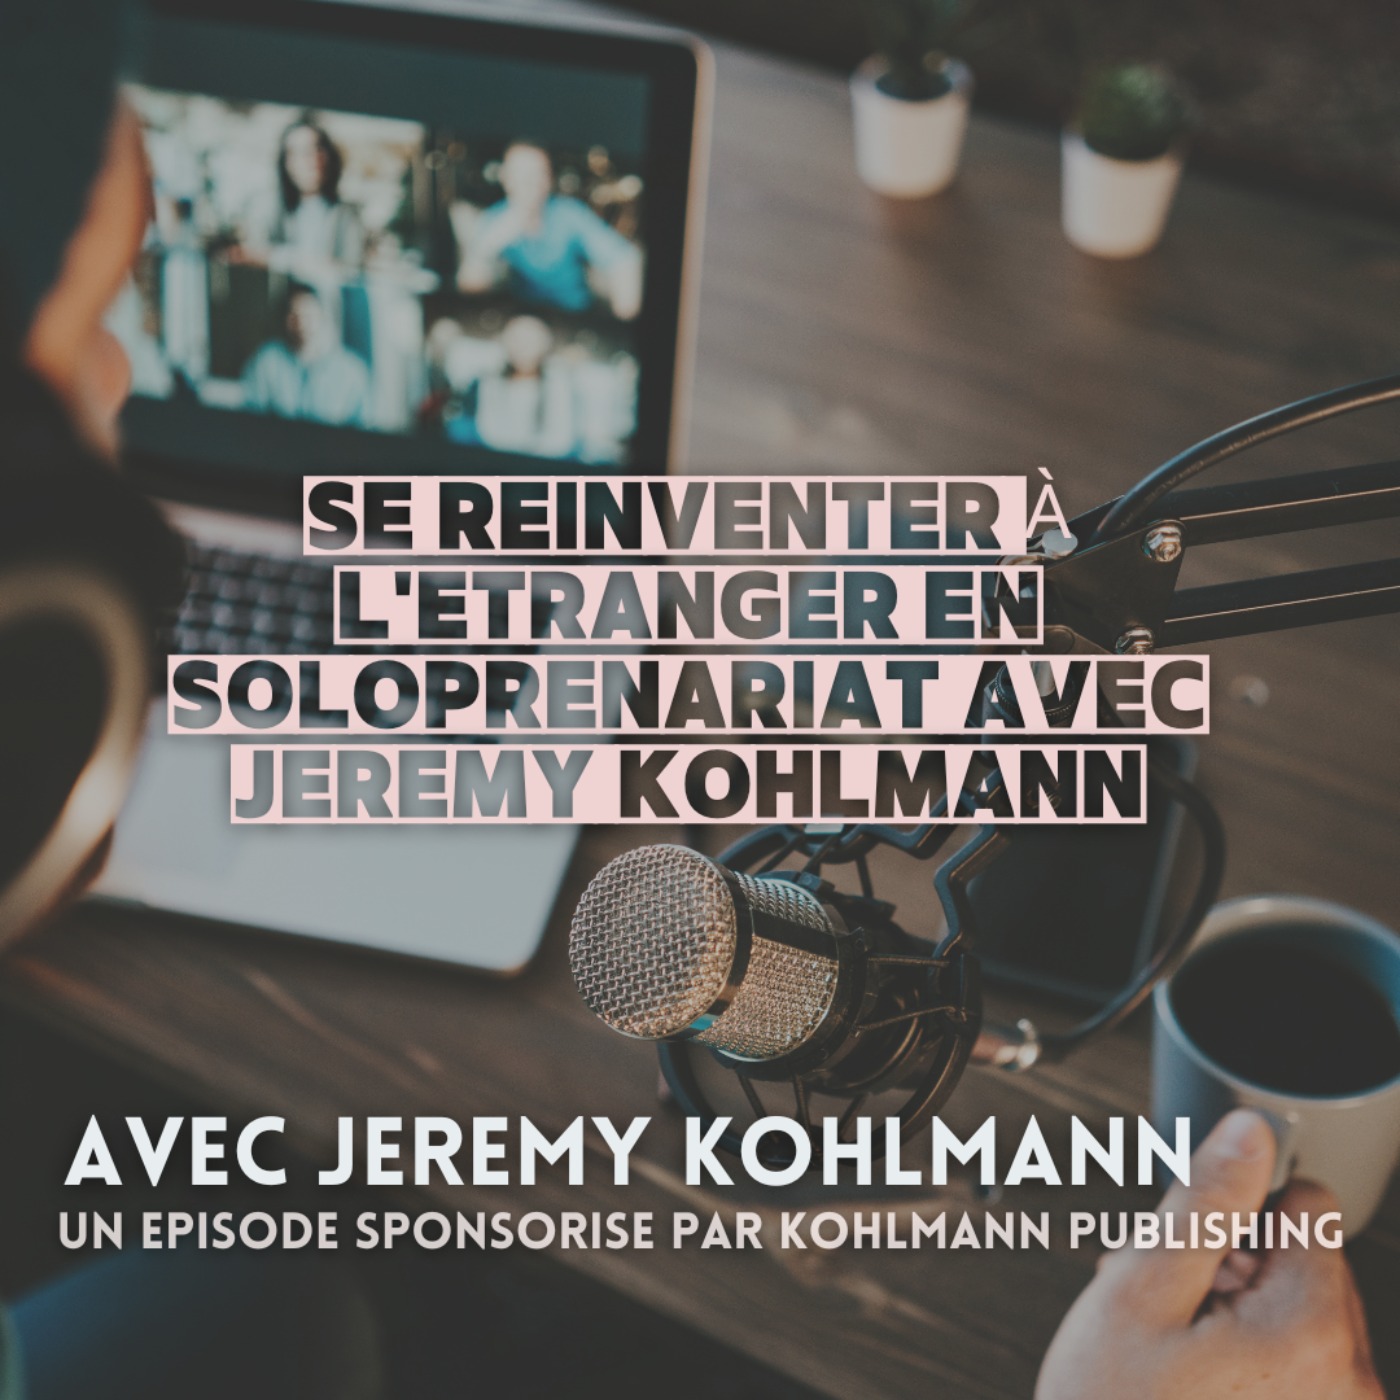 [BONUS]  Se réinventer à l’étranger en soloprenariat avec Jeremy Kohlmann